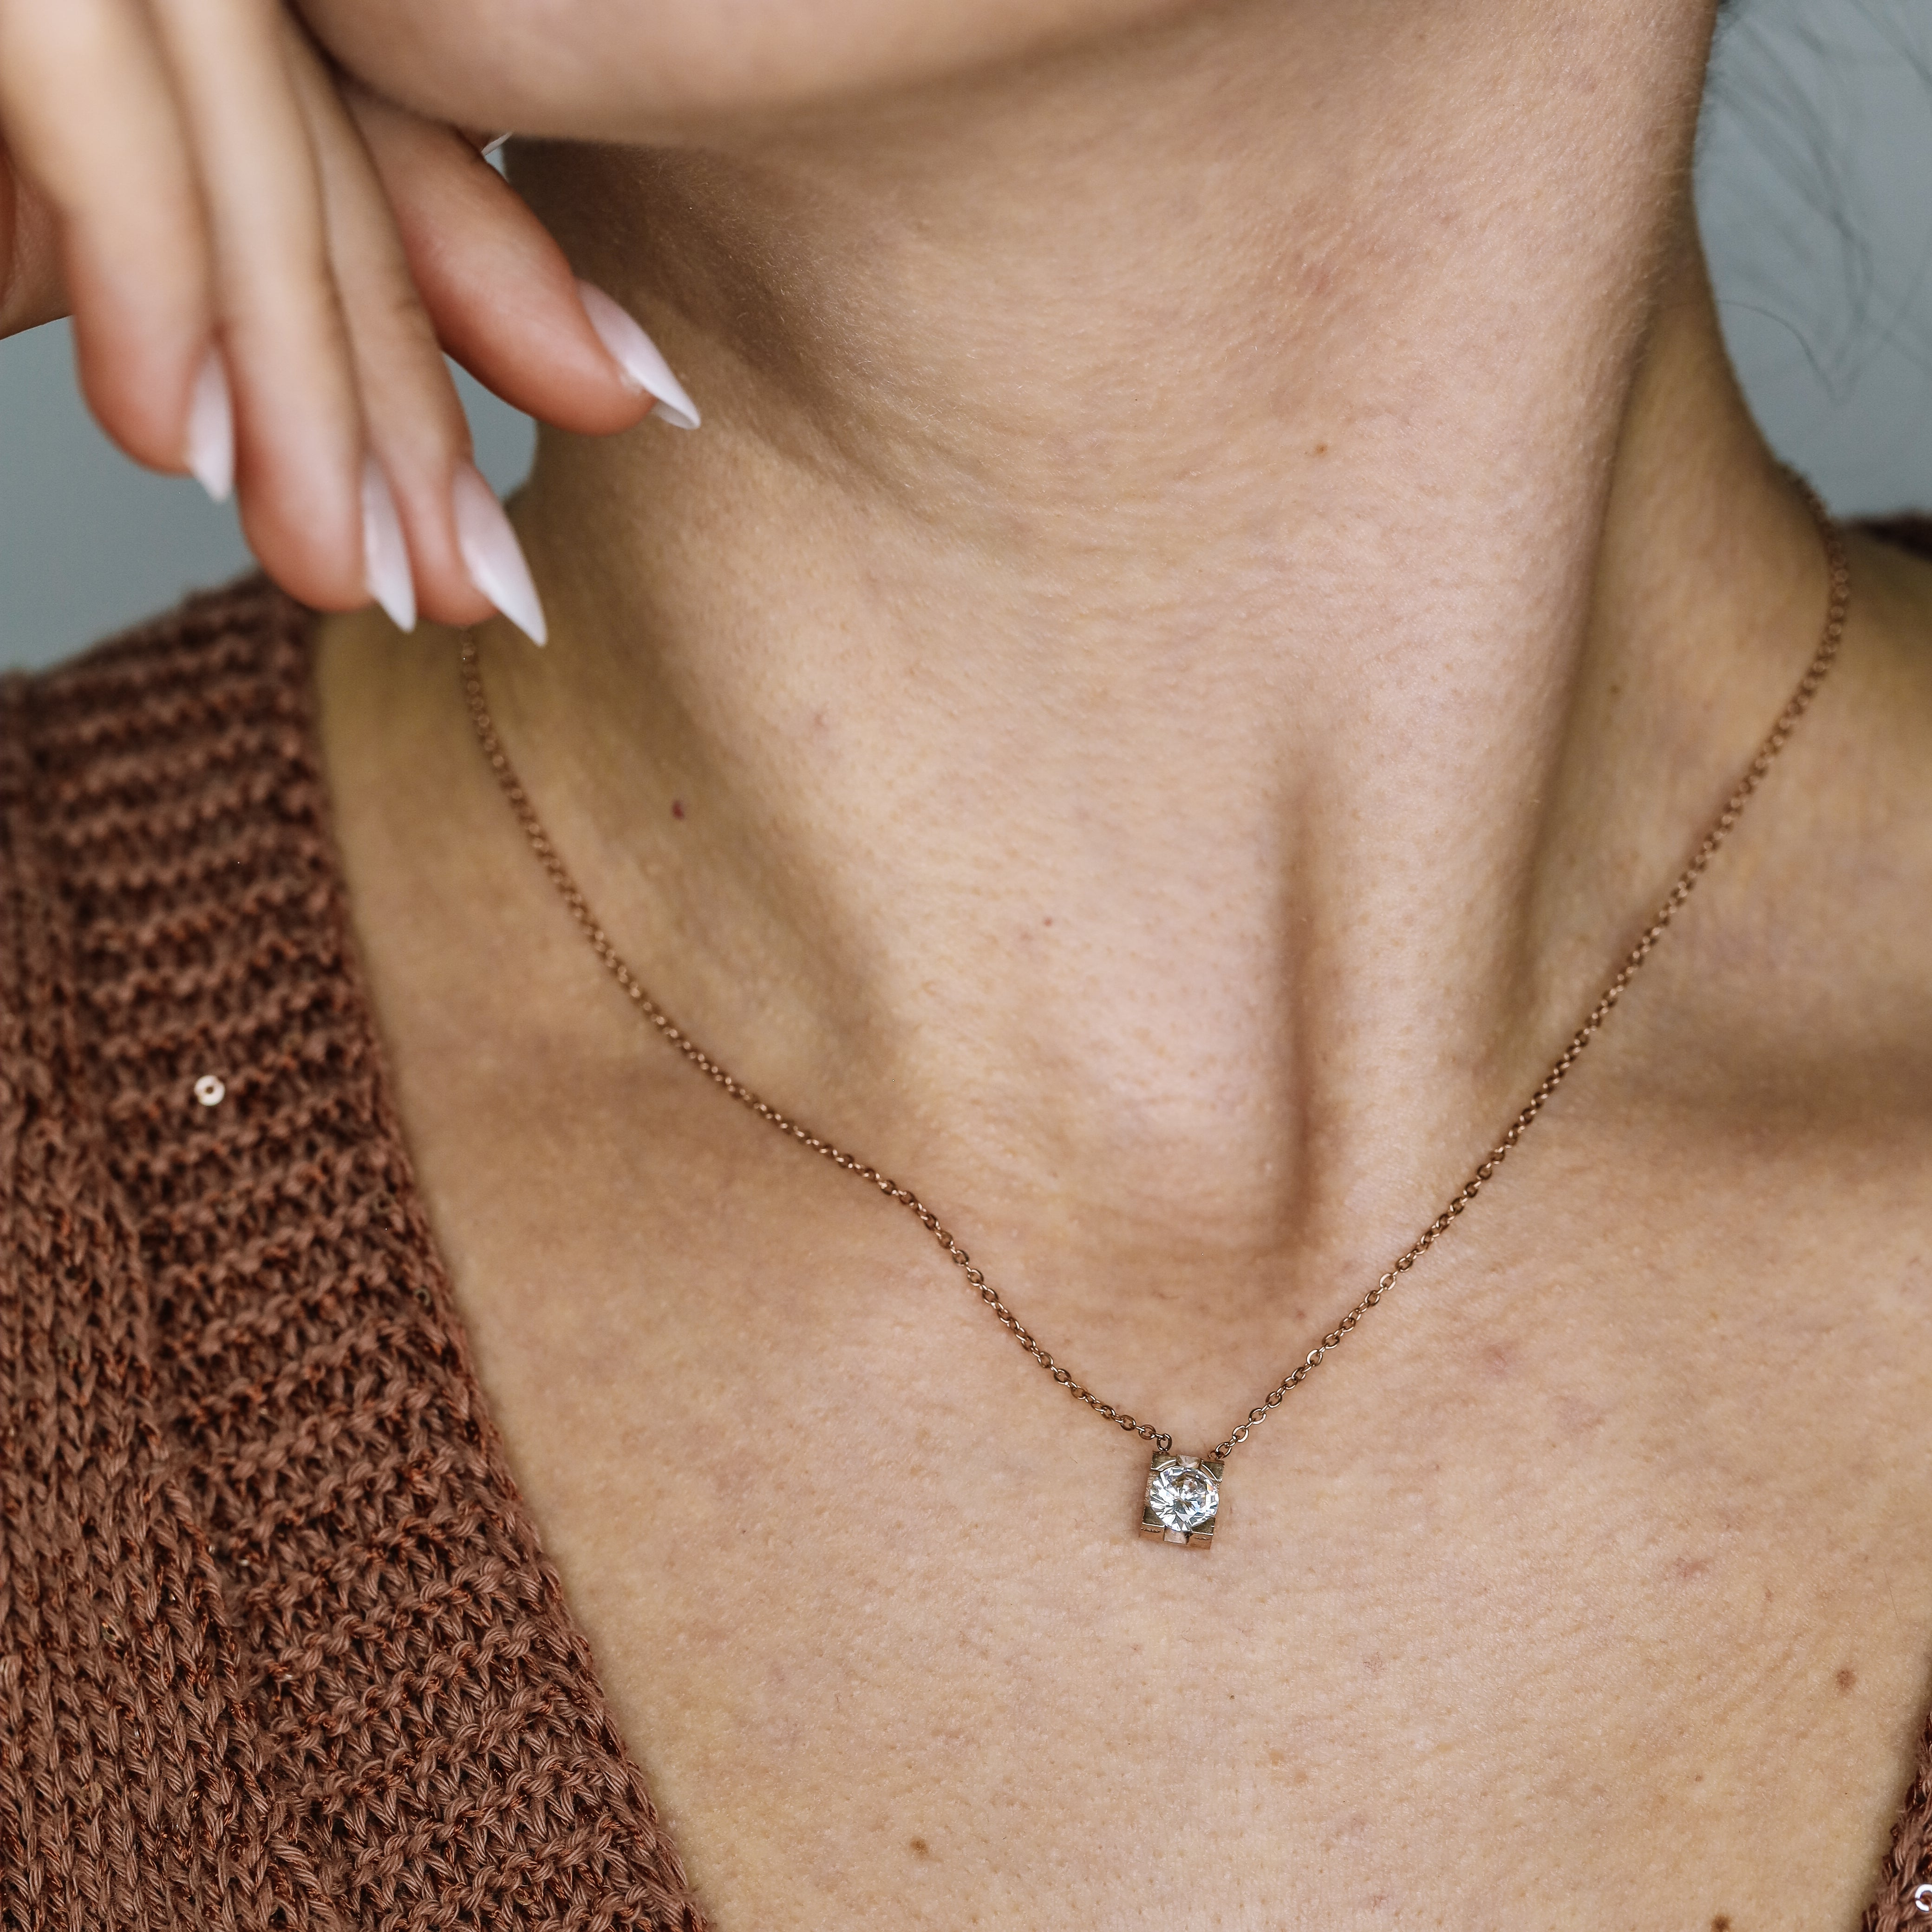 oem&odm vana desgin little diamond necklace| Alibaba.com